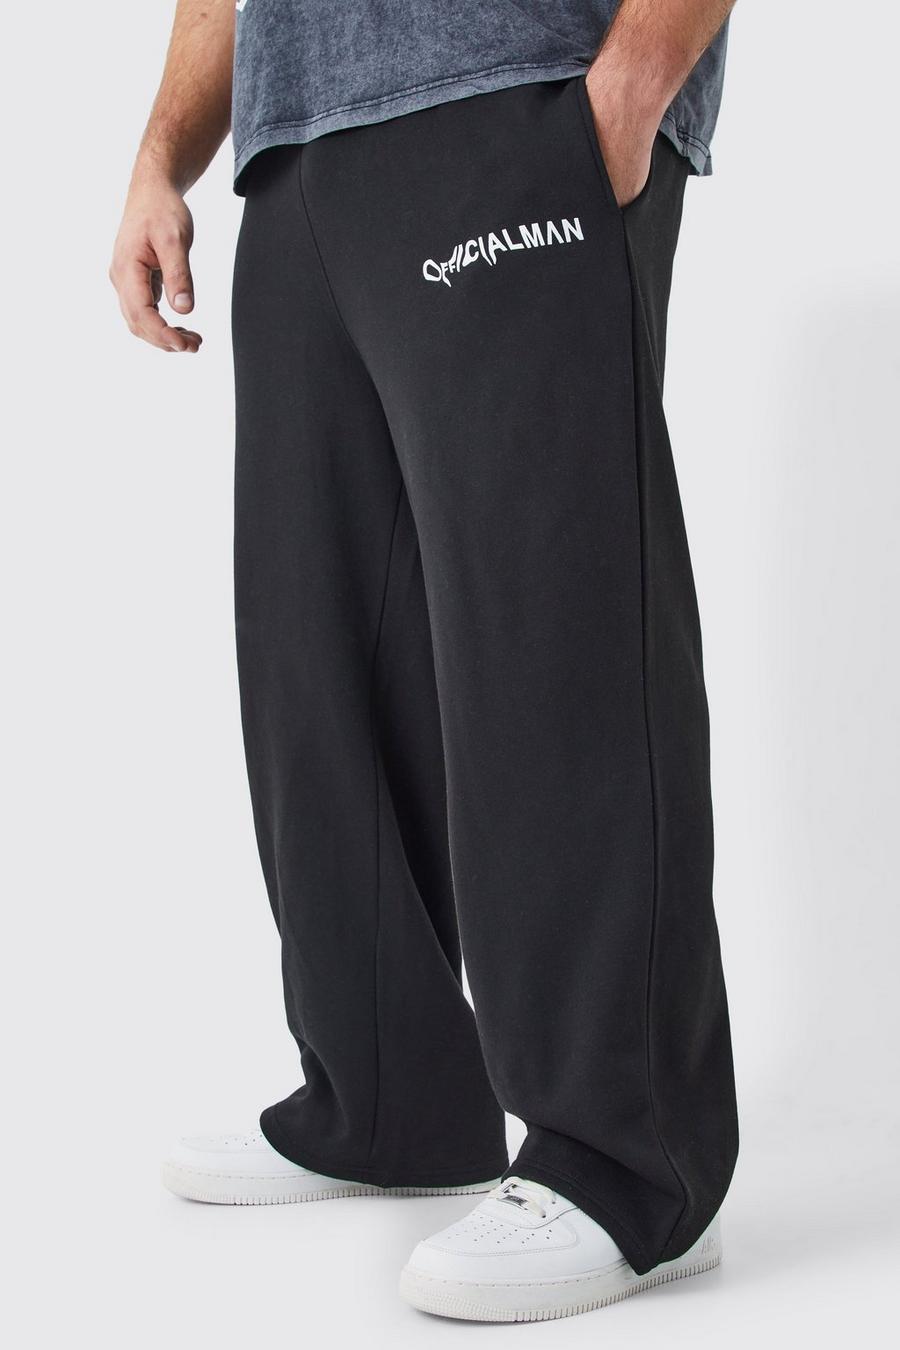 Pantaloni tuta rilassati Plus Size Official Man neri, Black image number 1